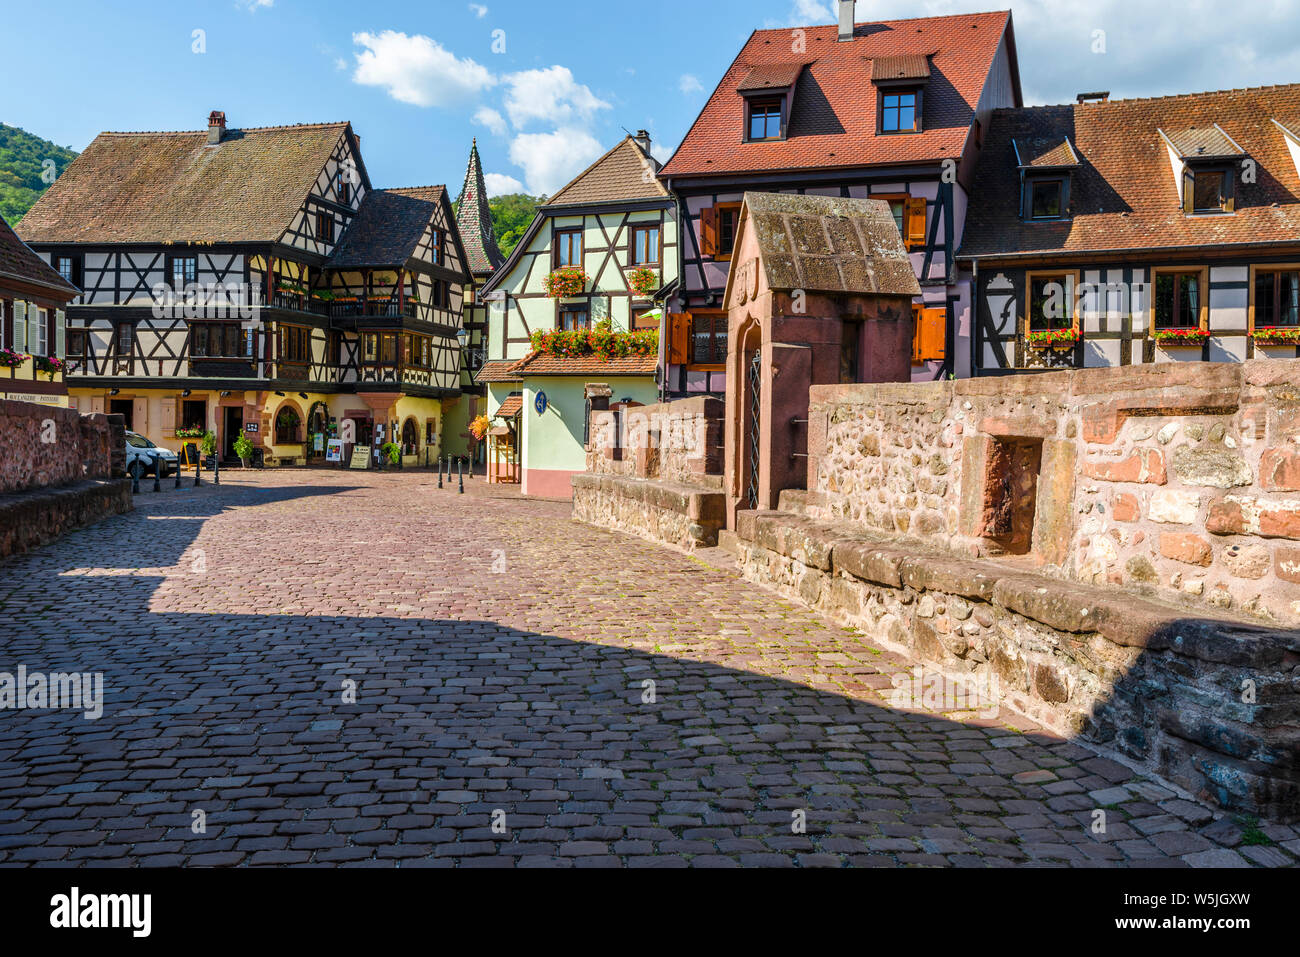 Pintoresca ciudad vieja en el centro de Kaysersberg, Alsacia, Francia, antigua ciudad con coloridas casas con entramados de madera y puente de piedra Foto de stock